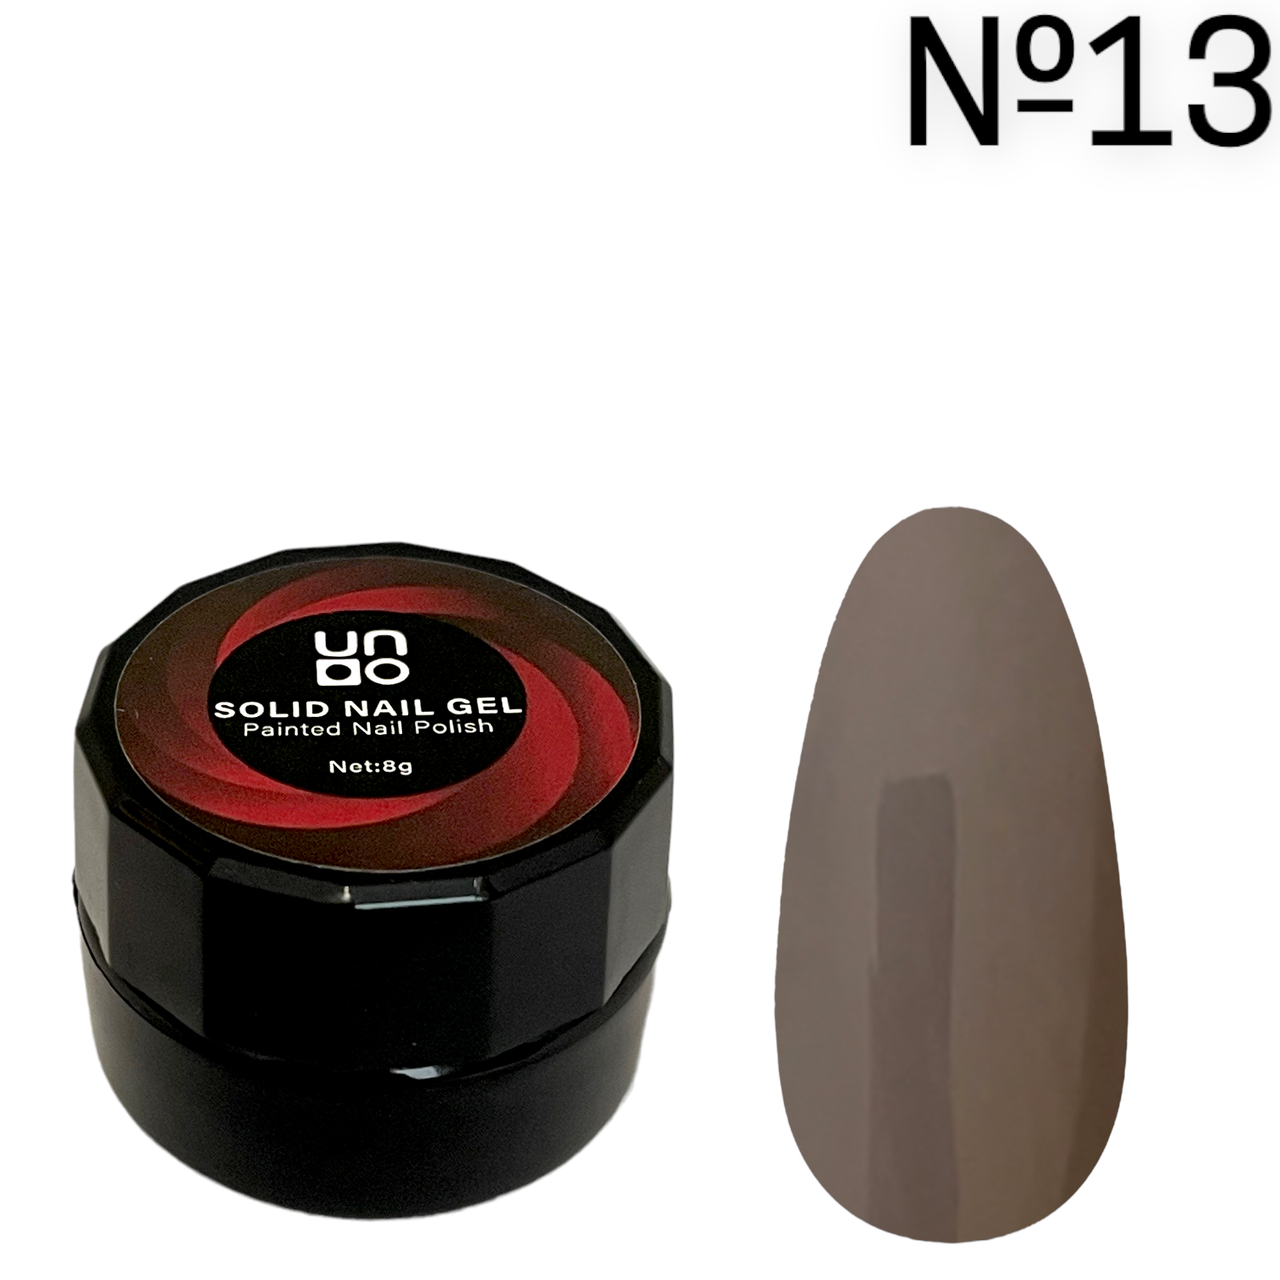 Гель підвищеної щільності / твердий гель-лак для нігтів Solid Nail Gel / Painted Nail Polish, 8 г. No13